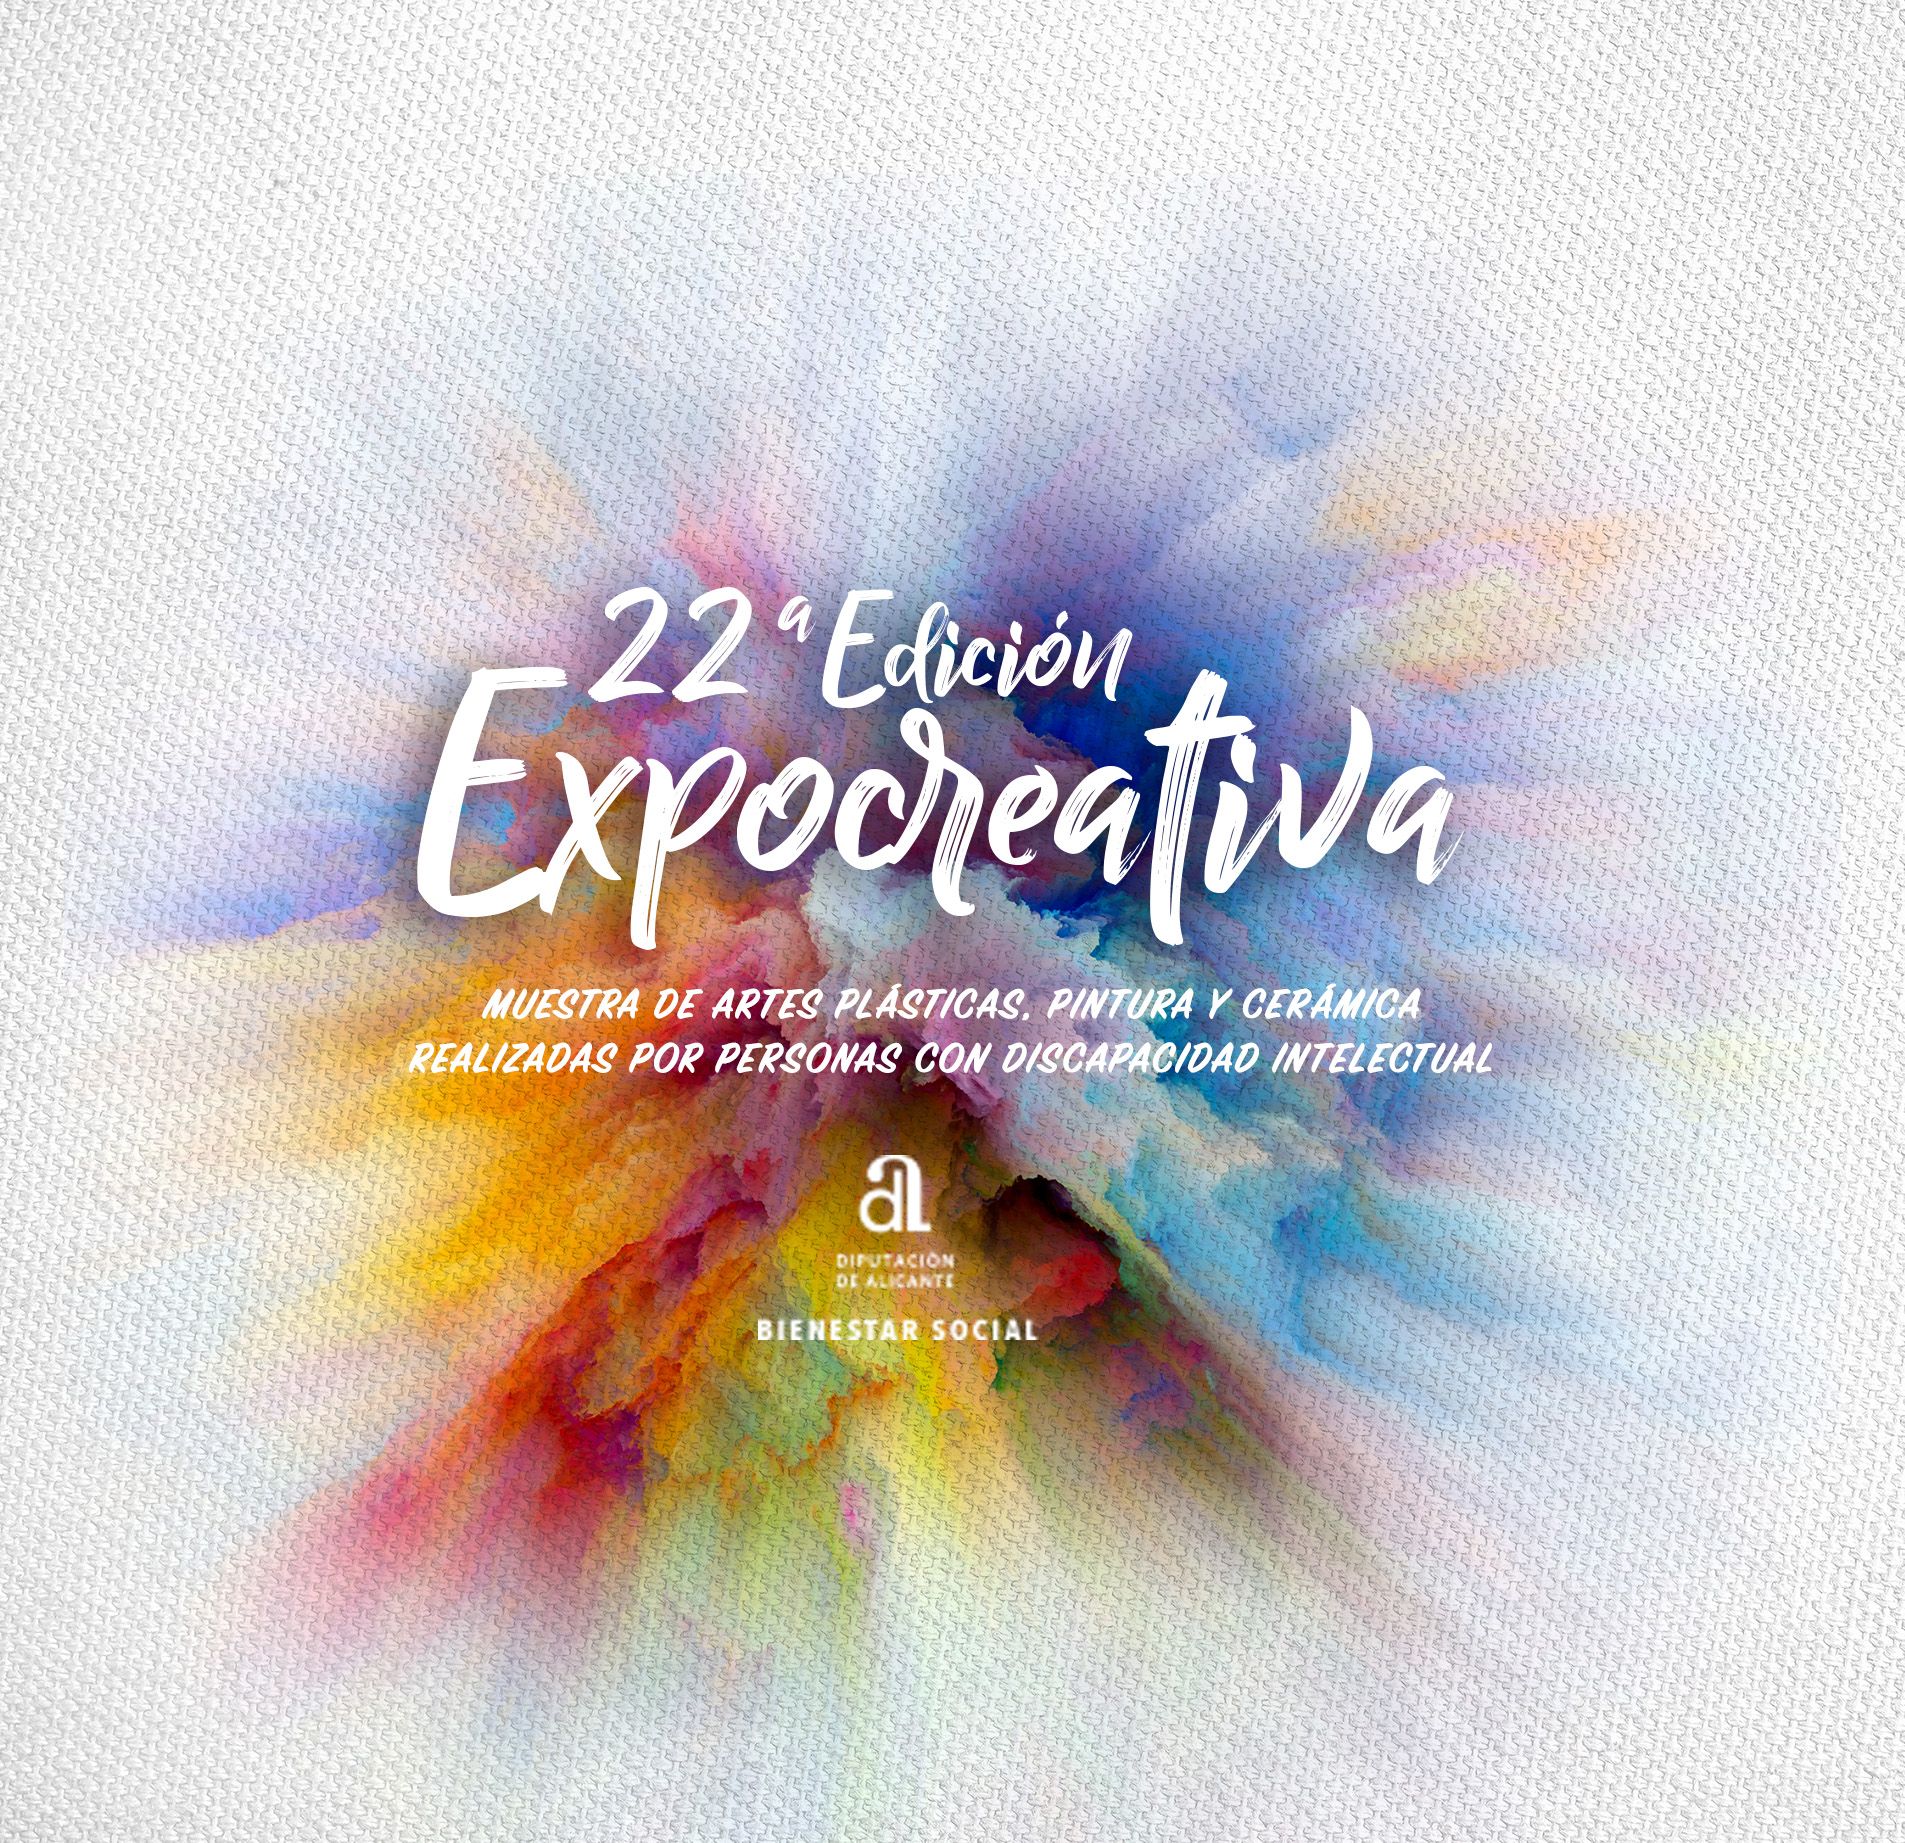 Expocreativa 2019 - Diputación de Alicante